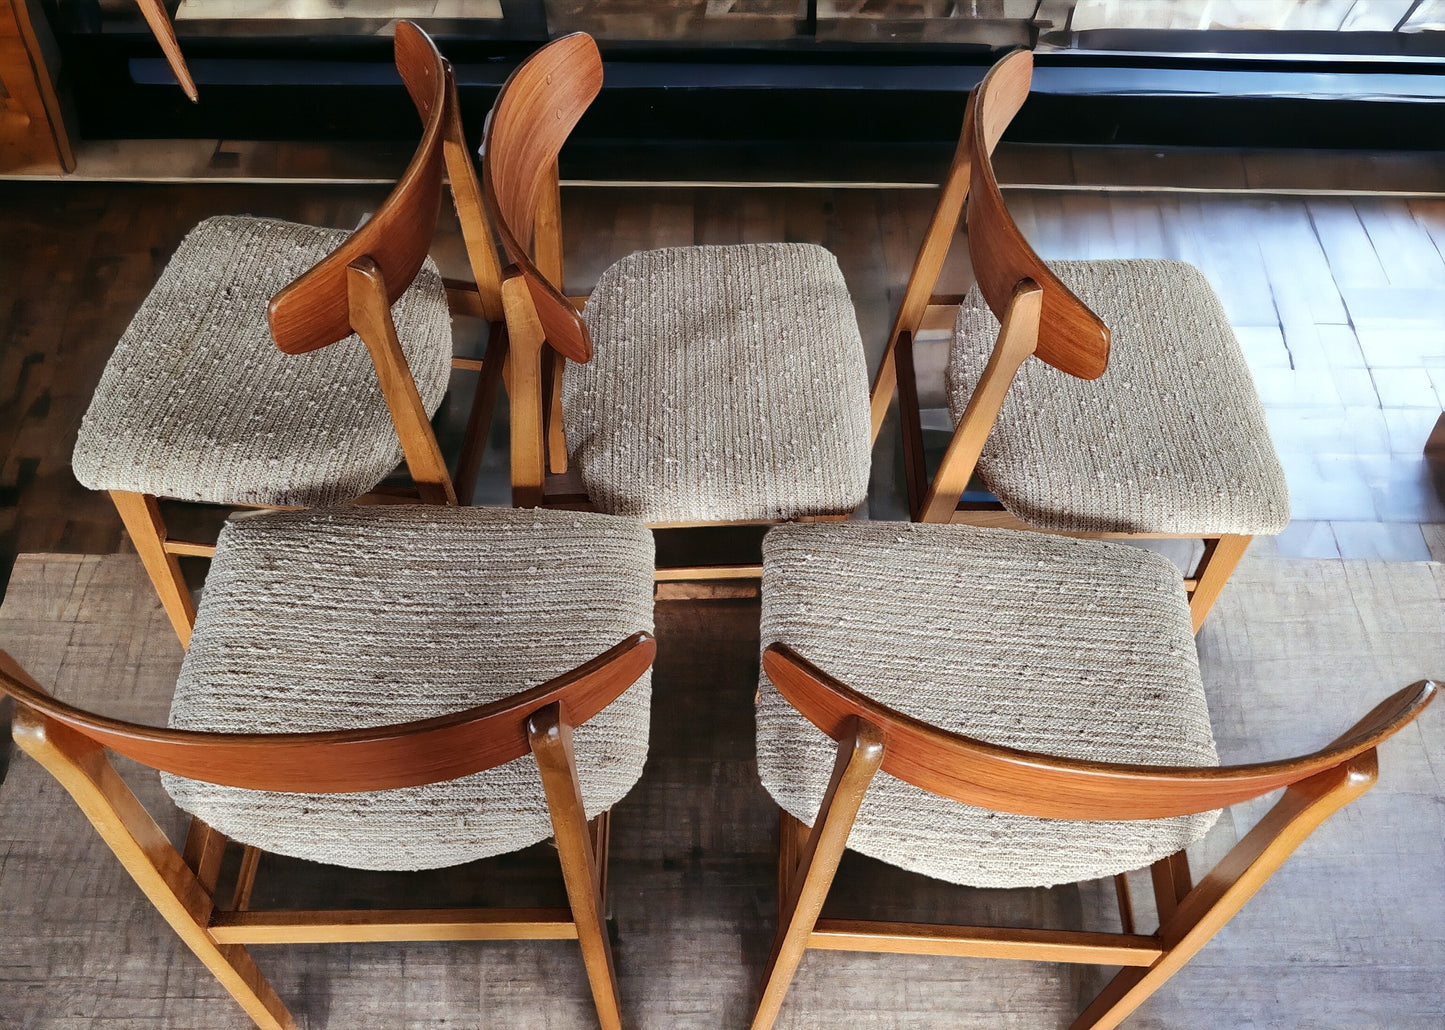 5 RESTORED Danish Mid Century Modern Teak & Beech Chairs